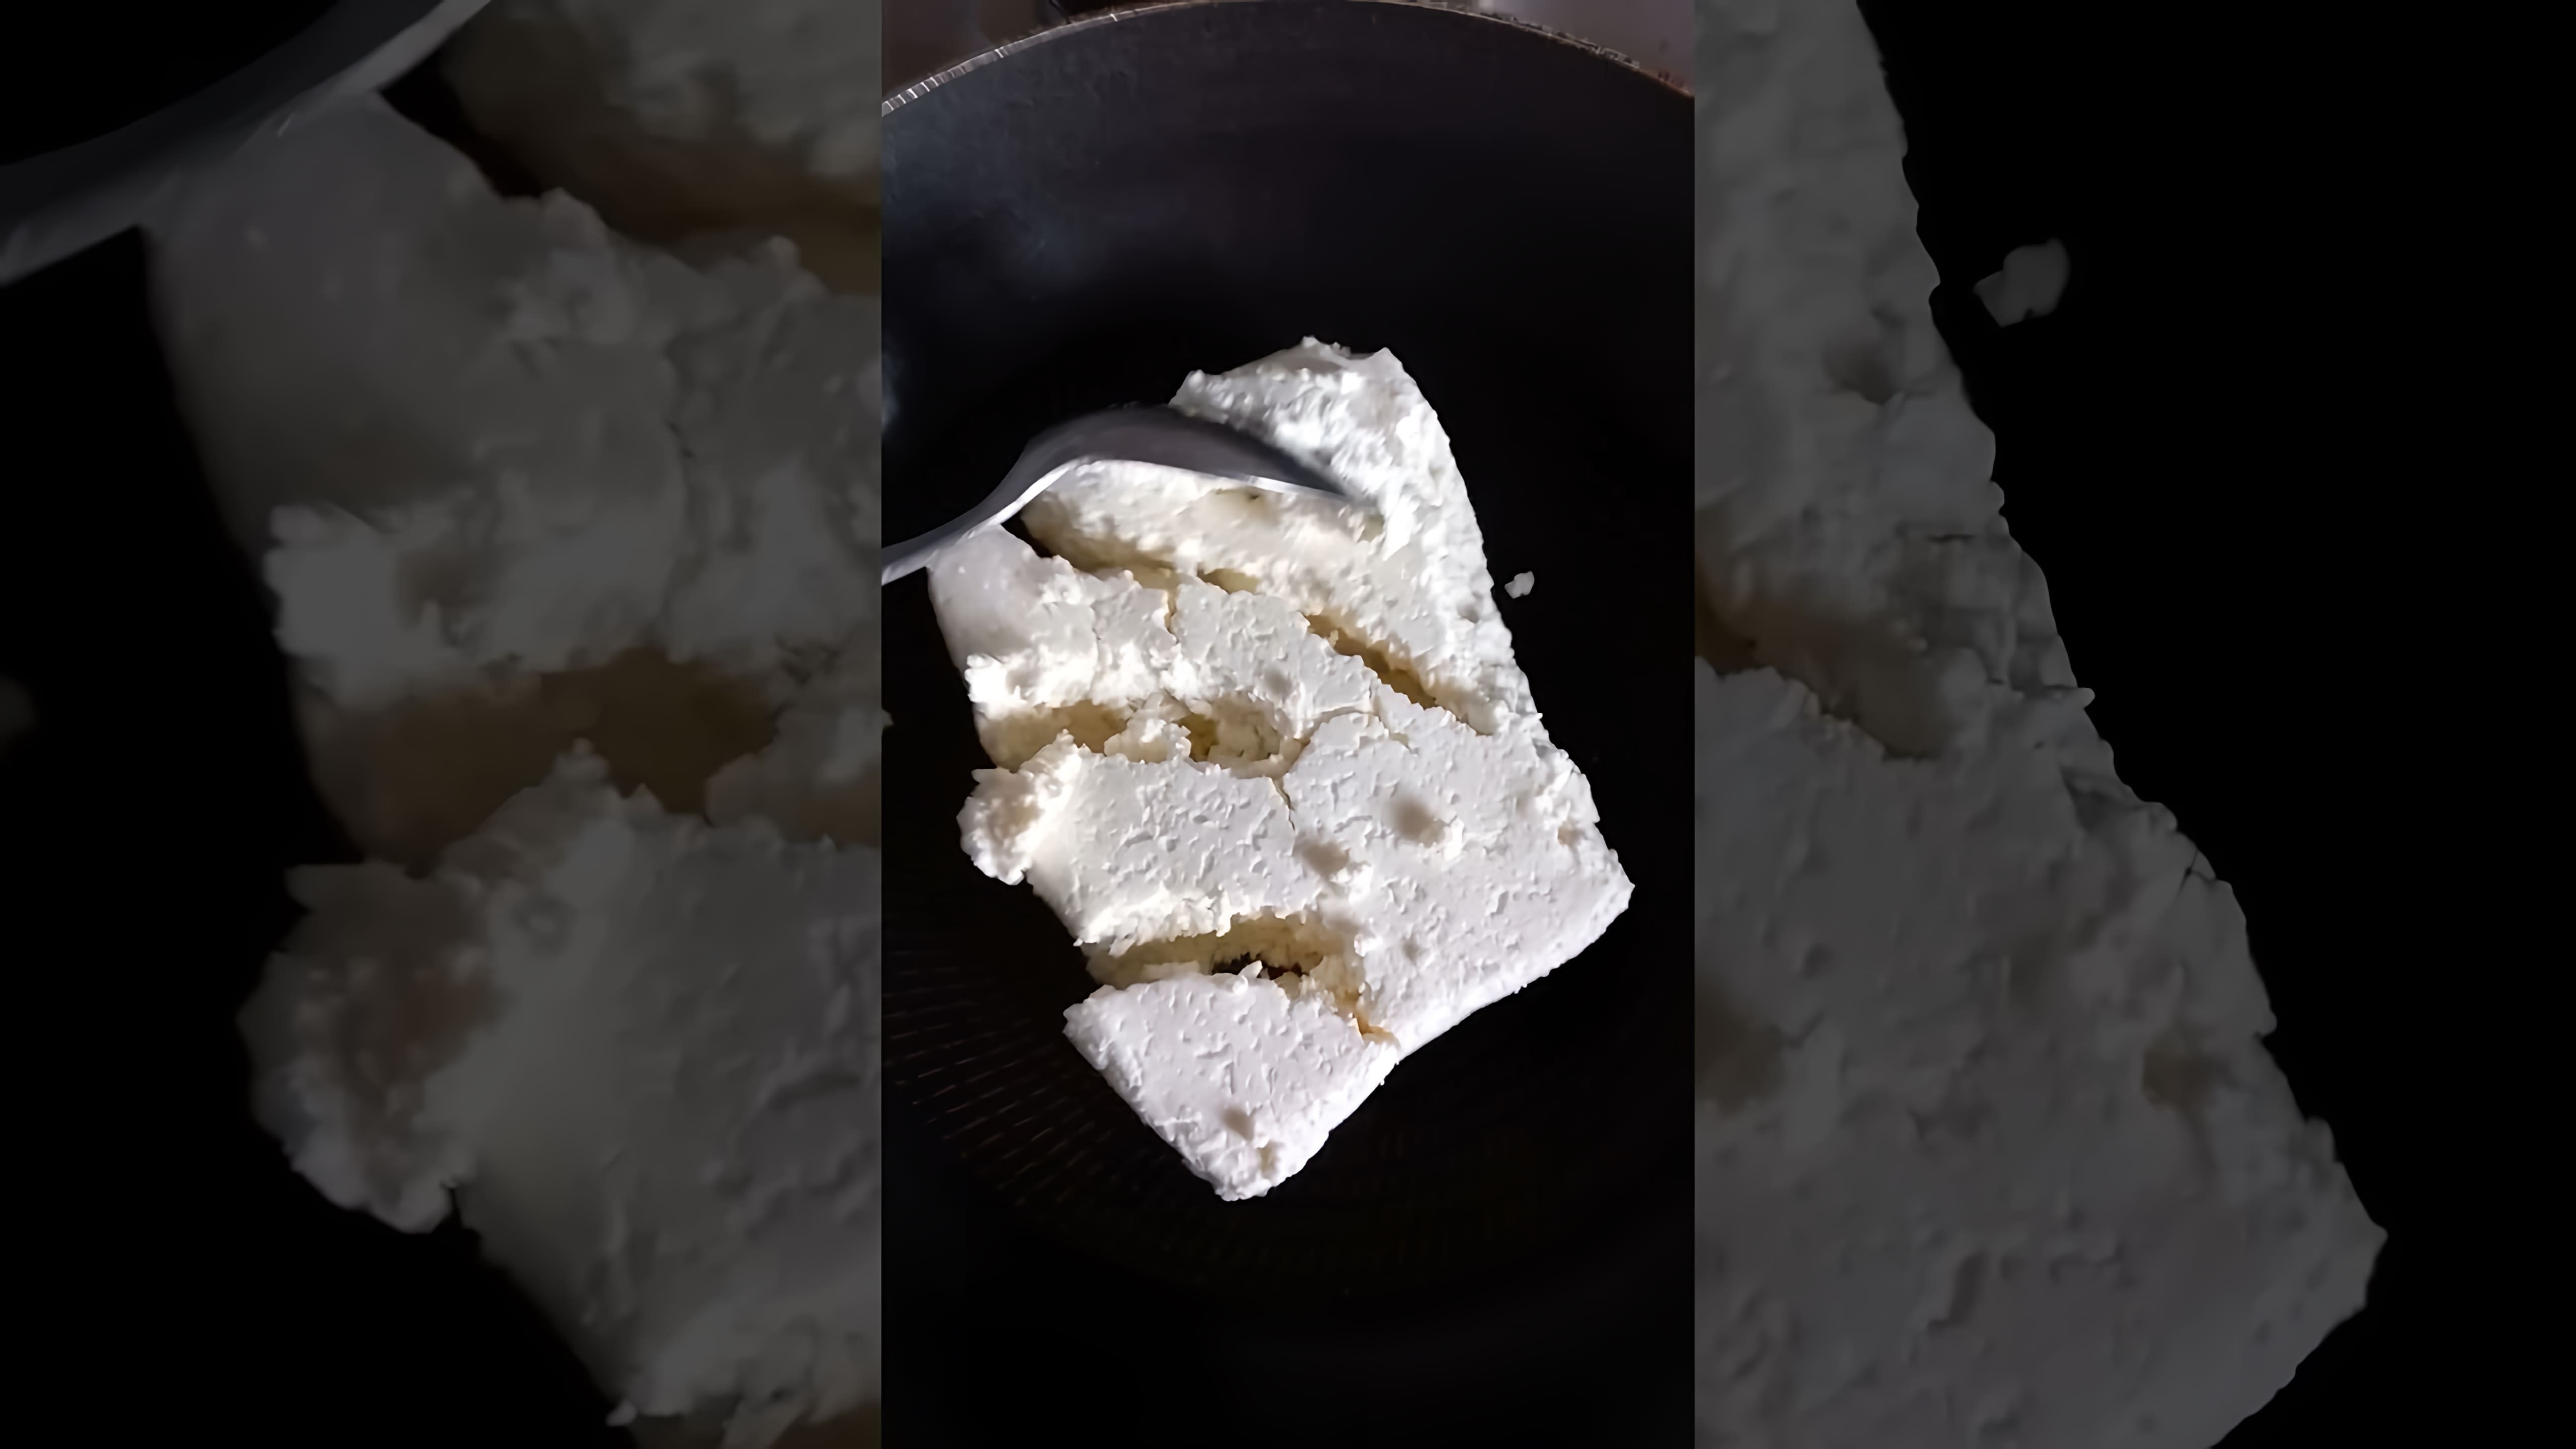 Видео-ролик с заголовком "Конфеты из творога" представляет собой обучающее видео, в котором демонстрируется процесс приготовления домашних конфет из творога